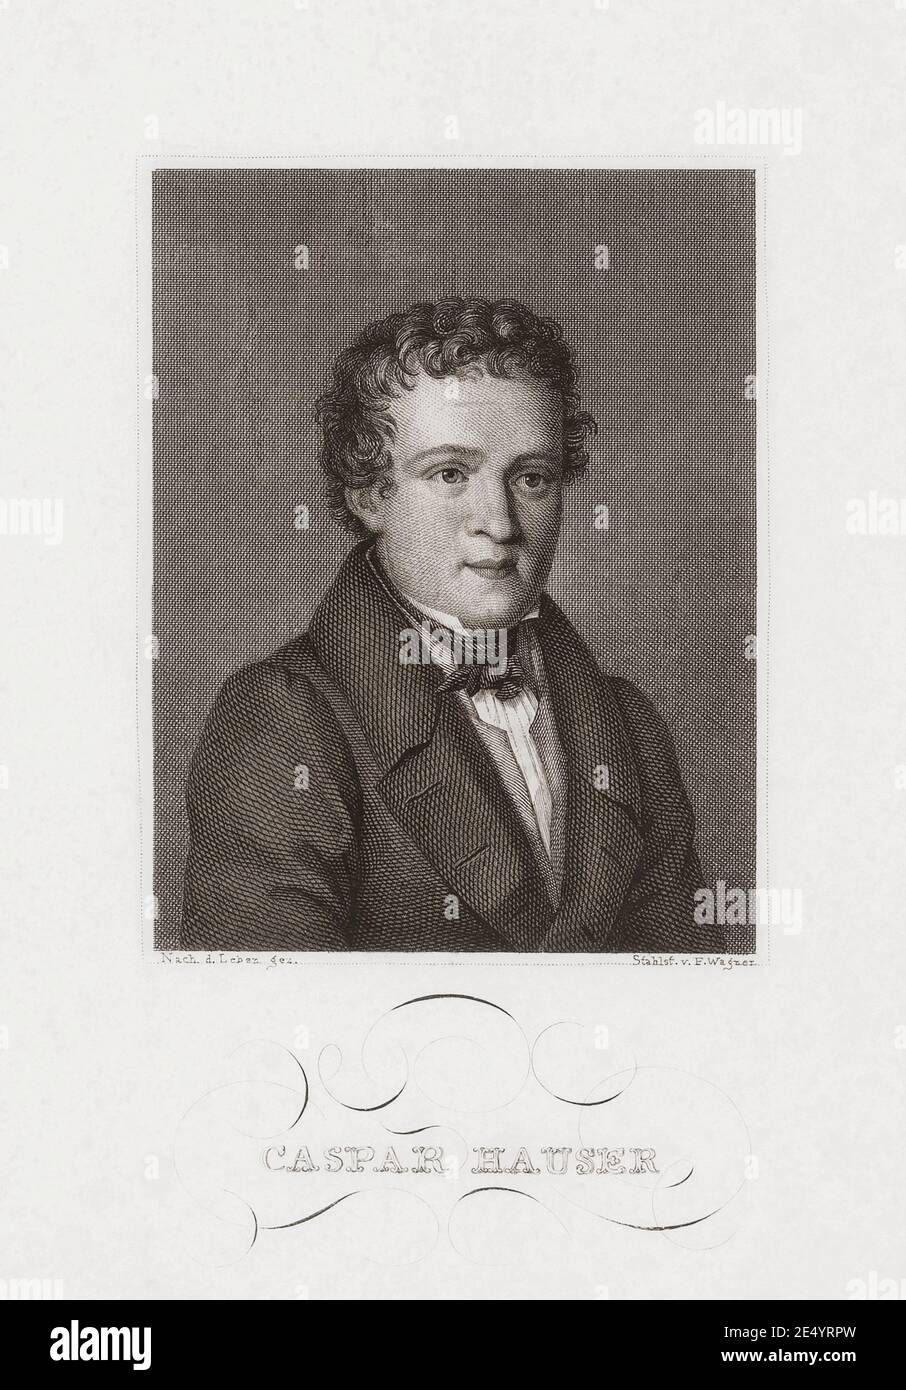 Kaspar Hauser, c. 1812 - 1833. Hauser apparut mystérieusement en 1828, affirmant qu'il avait été enfermé dans un donjon depuis qu'il était un petit enfant. Son étrange cas titillait la fantaisie publique. Parmi les rumeurs étaient une qu'il était le prince héréditaire de Baden. Sa mort à la suite d'une blessure par coups de couteau en 1833 a ajouté un mystère supplémentaire à son cas : certains pensaient qu'il avait été assassiné, d'autres qu'il s'était poignardé lui-même. Après un travail de Friedrich Wagner. Banque D'Images